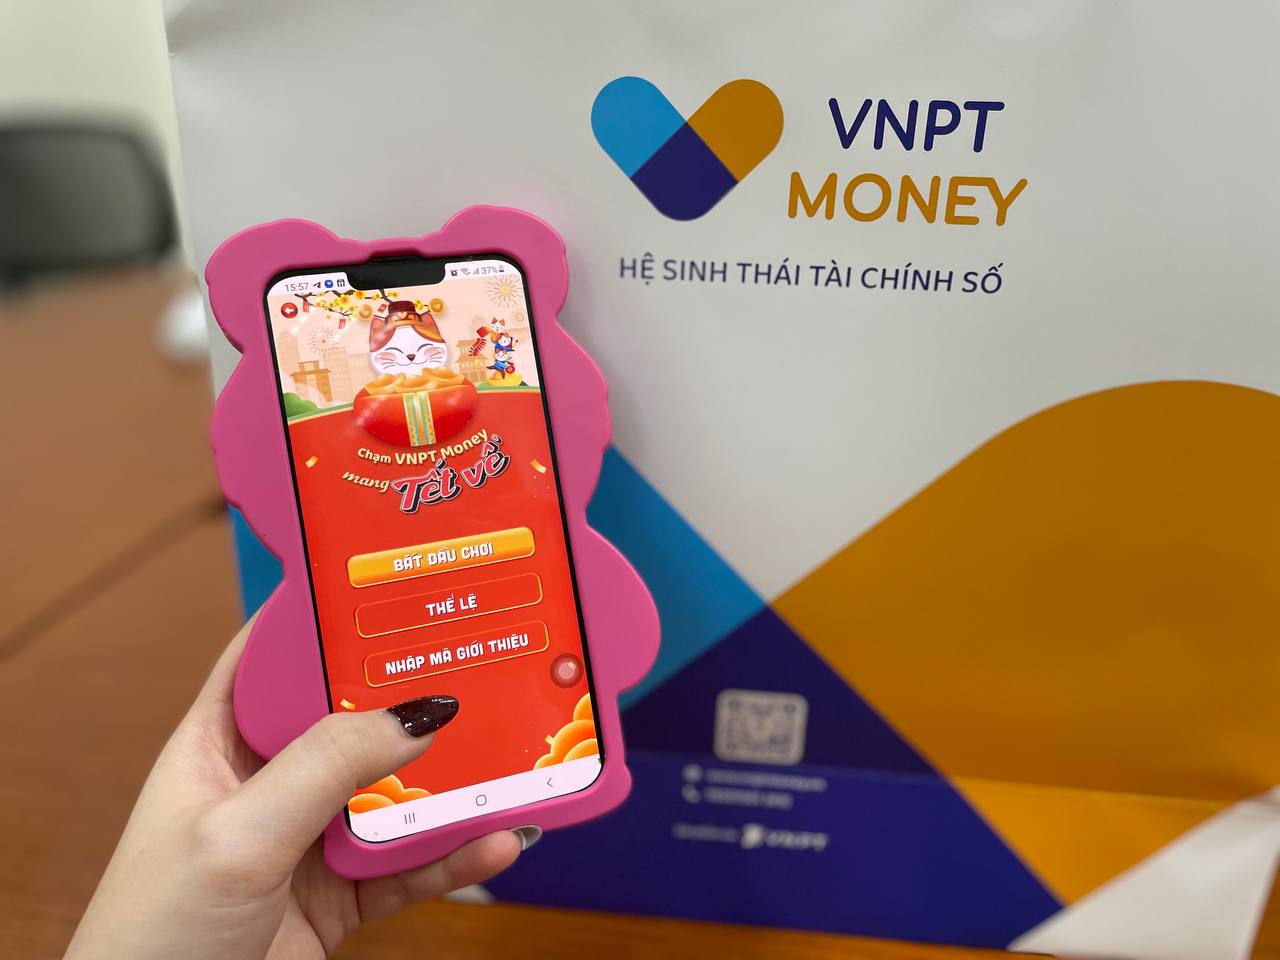 Cơ hội trúng nhiều giải thưởng giá trị khi thực hiện các giao dịch thanh toán hàng ngày trên VNPT Money